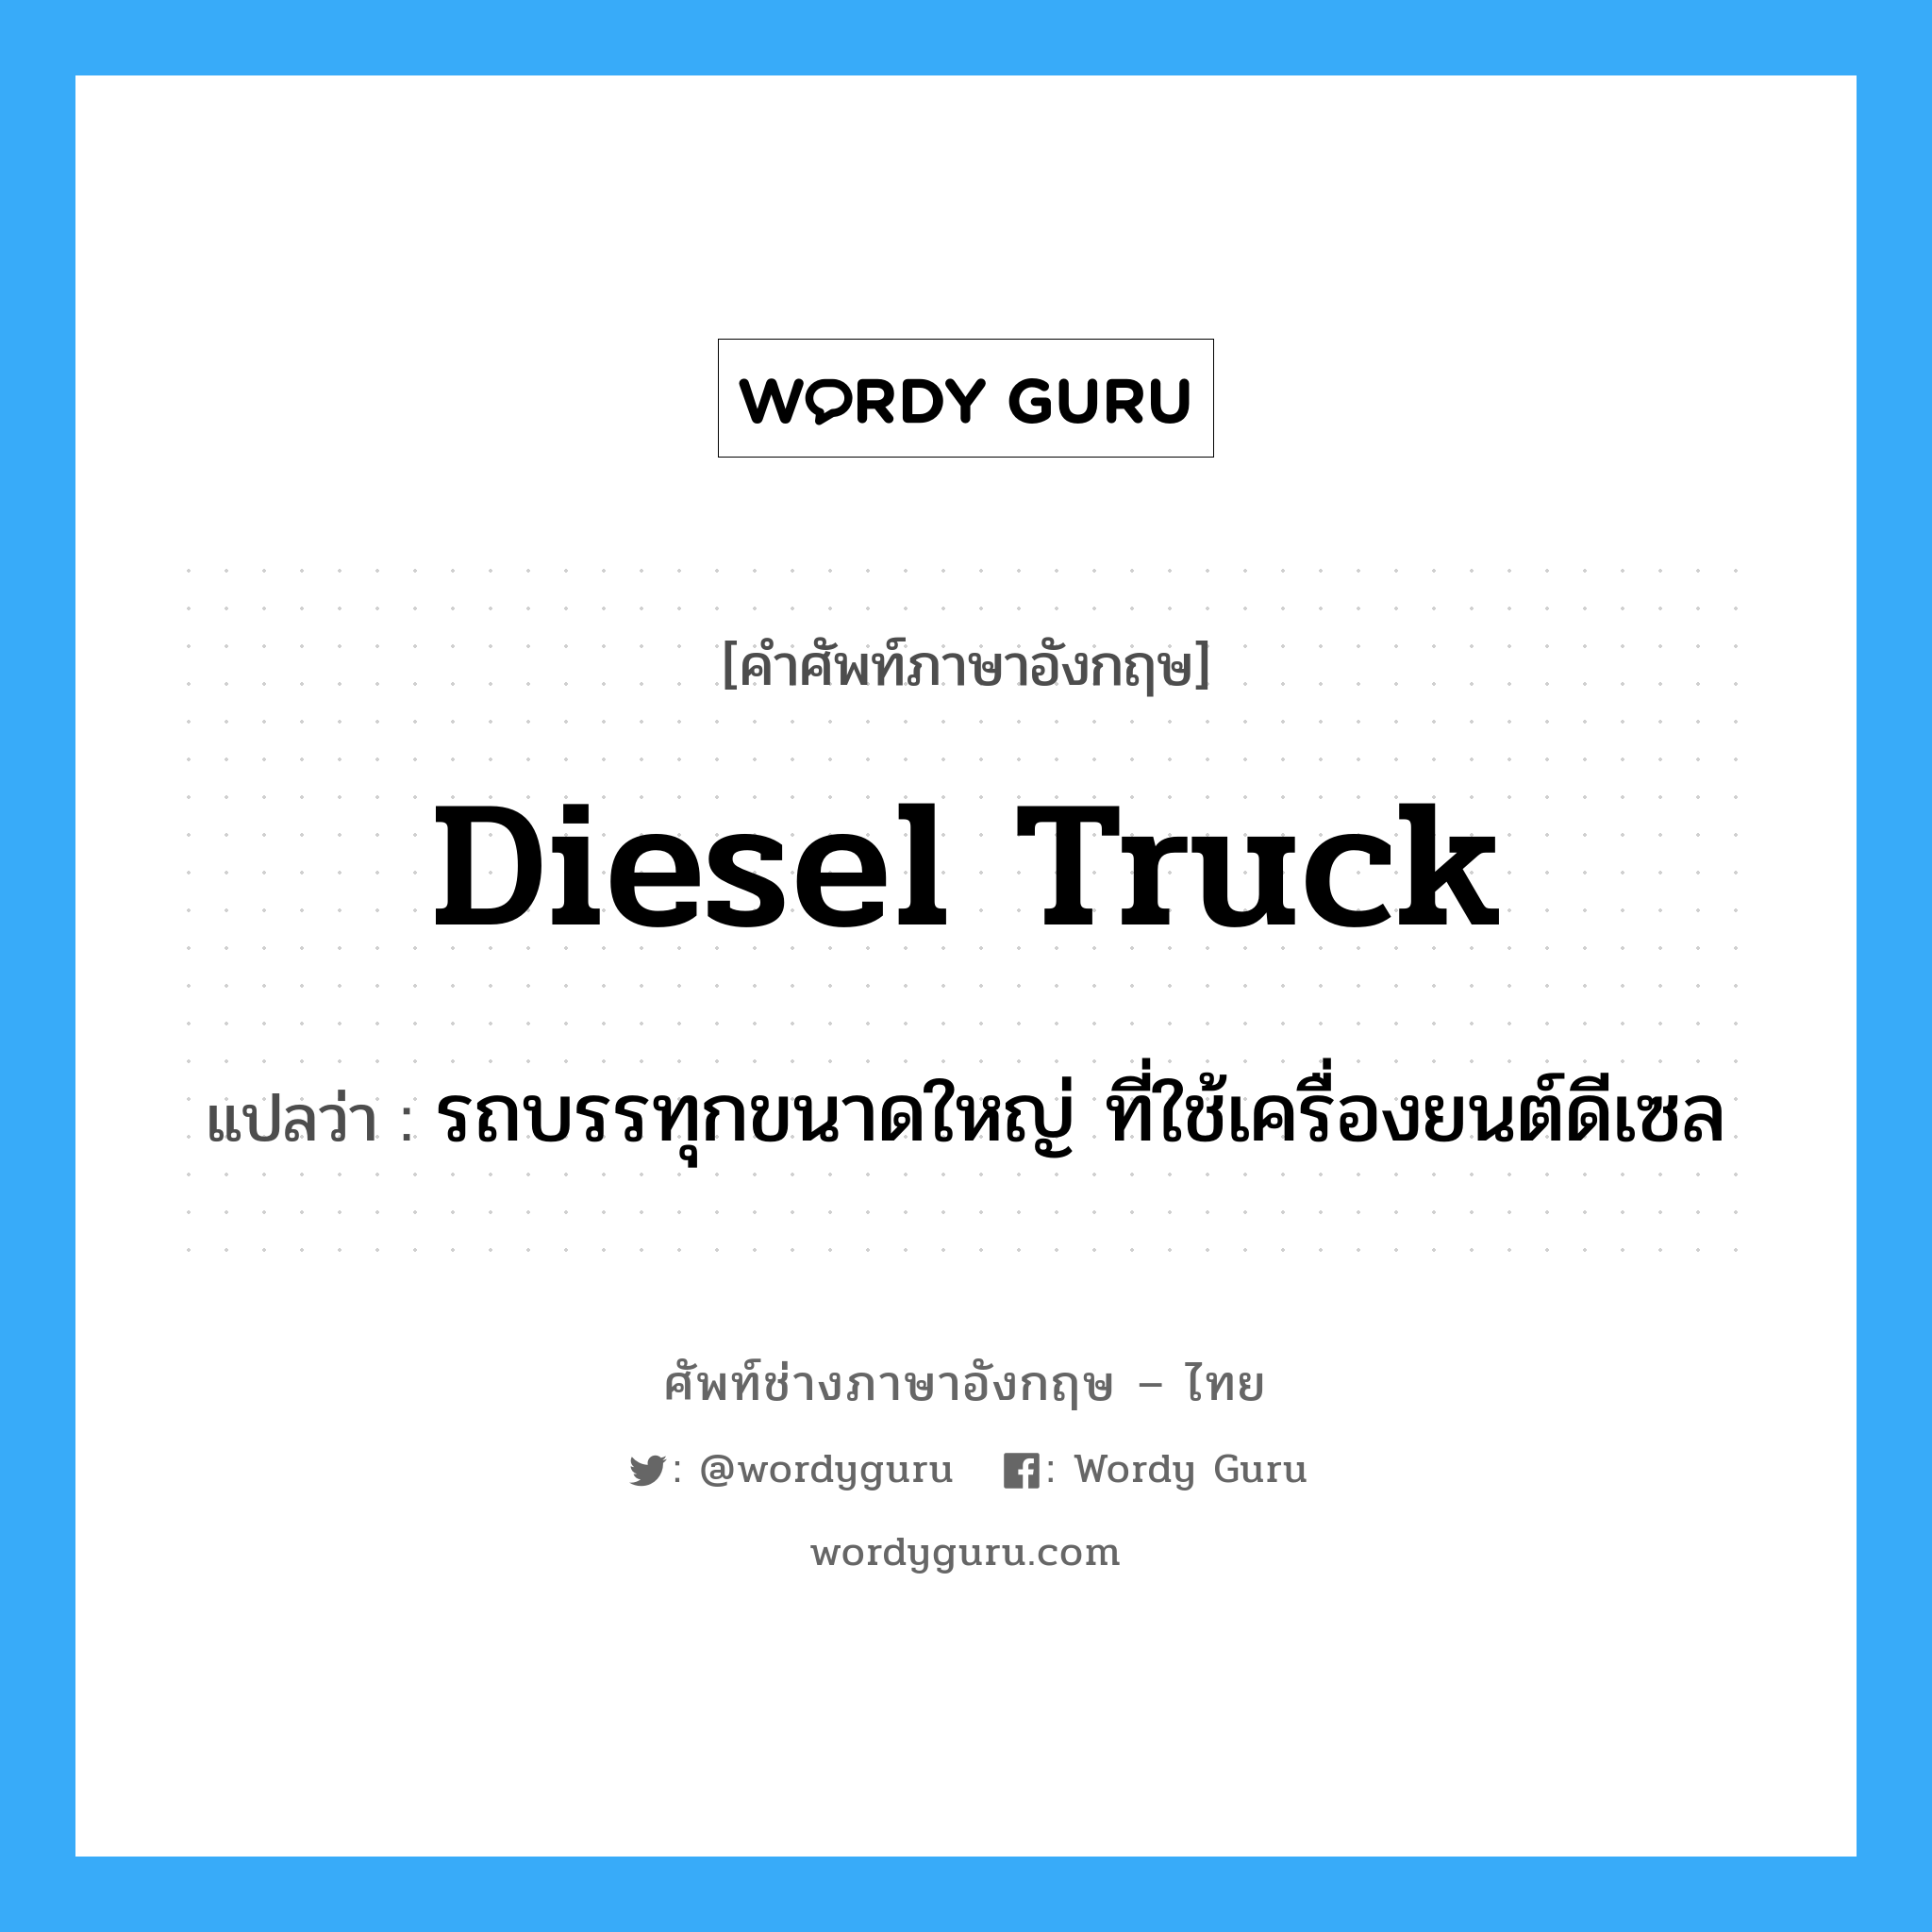 Diesel truck แปลว่า?, คำศัพท์ช่างภาษาอังกฤษ - ไทย Diesel truck คำศัพท์ภาษาอังกฤษ Diesel truck แปลว่า รถบรรทุกขนาดใหญ่ ที่ใช้เครื่องยนต์ดีเซล